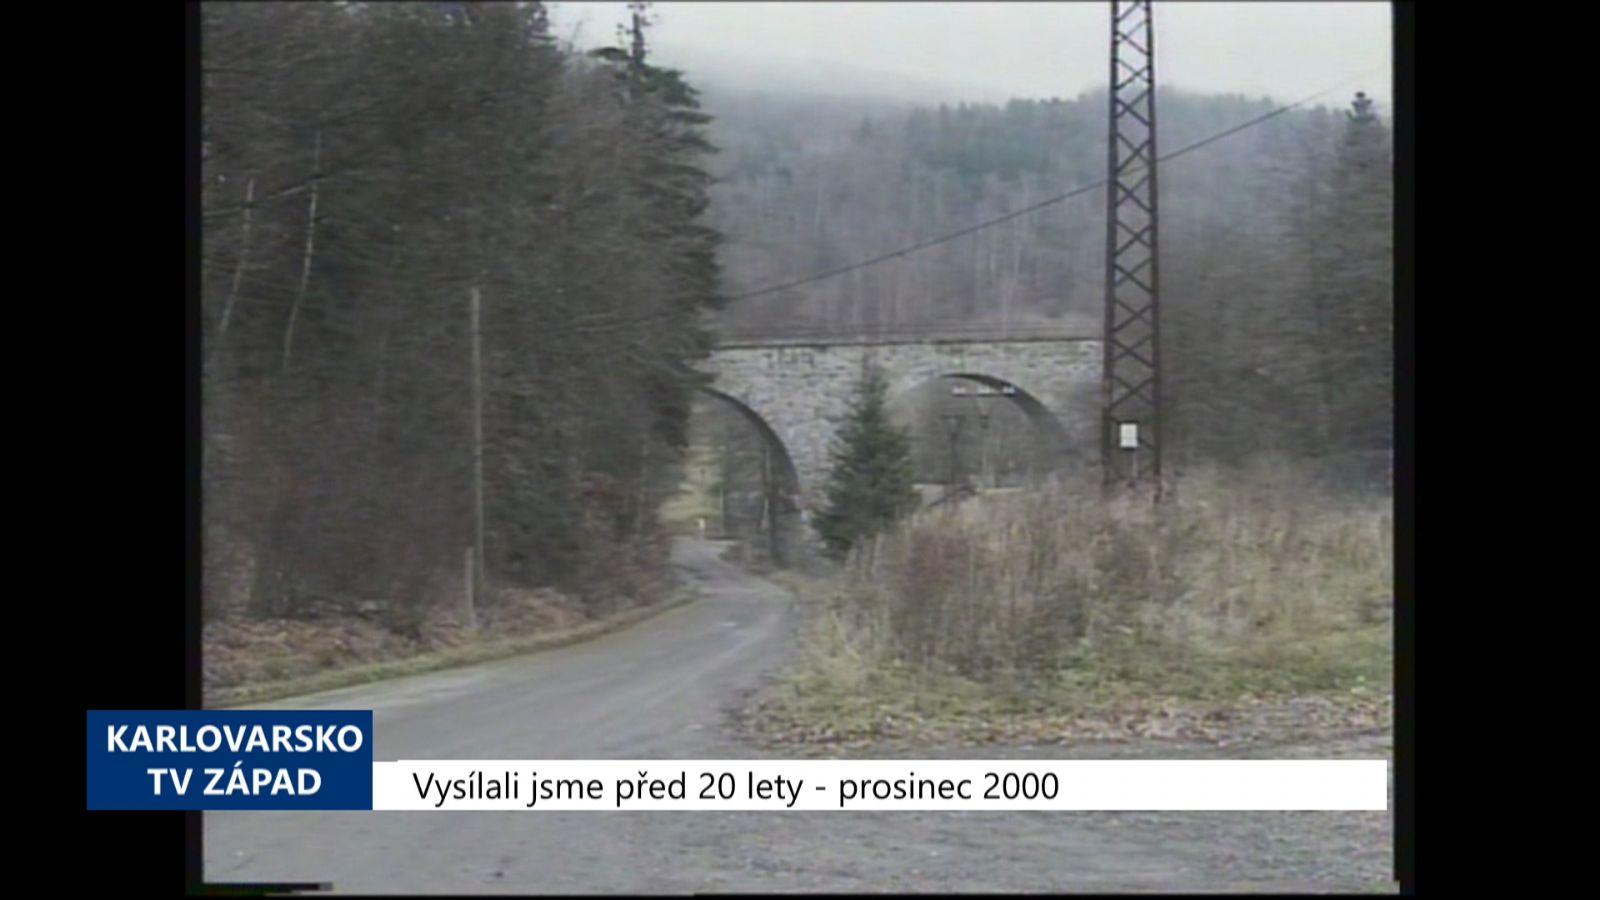 2000 – Údolí: Mladý muž skokem z mostu ukončil svůj život (TV Západ)